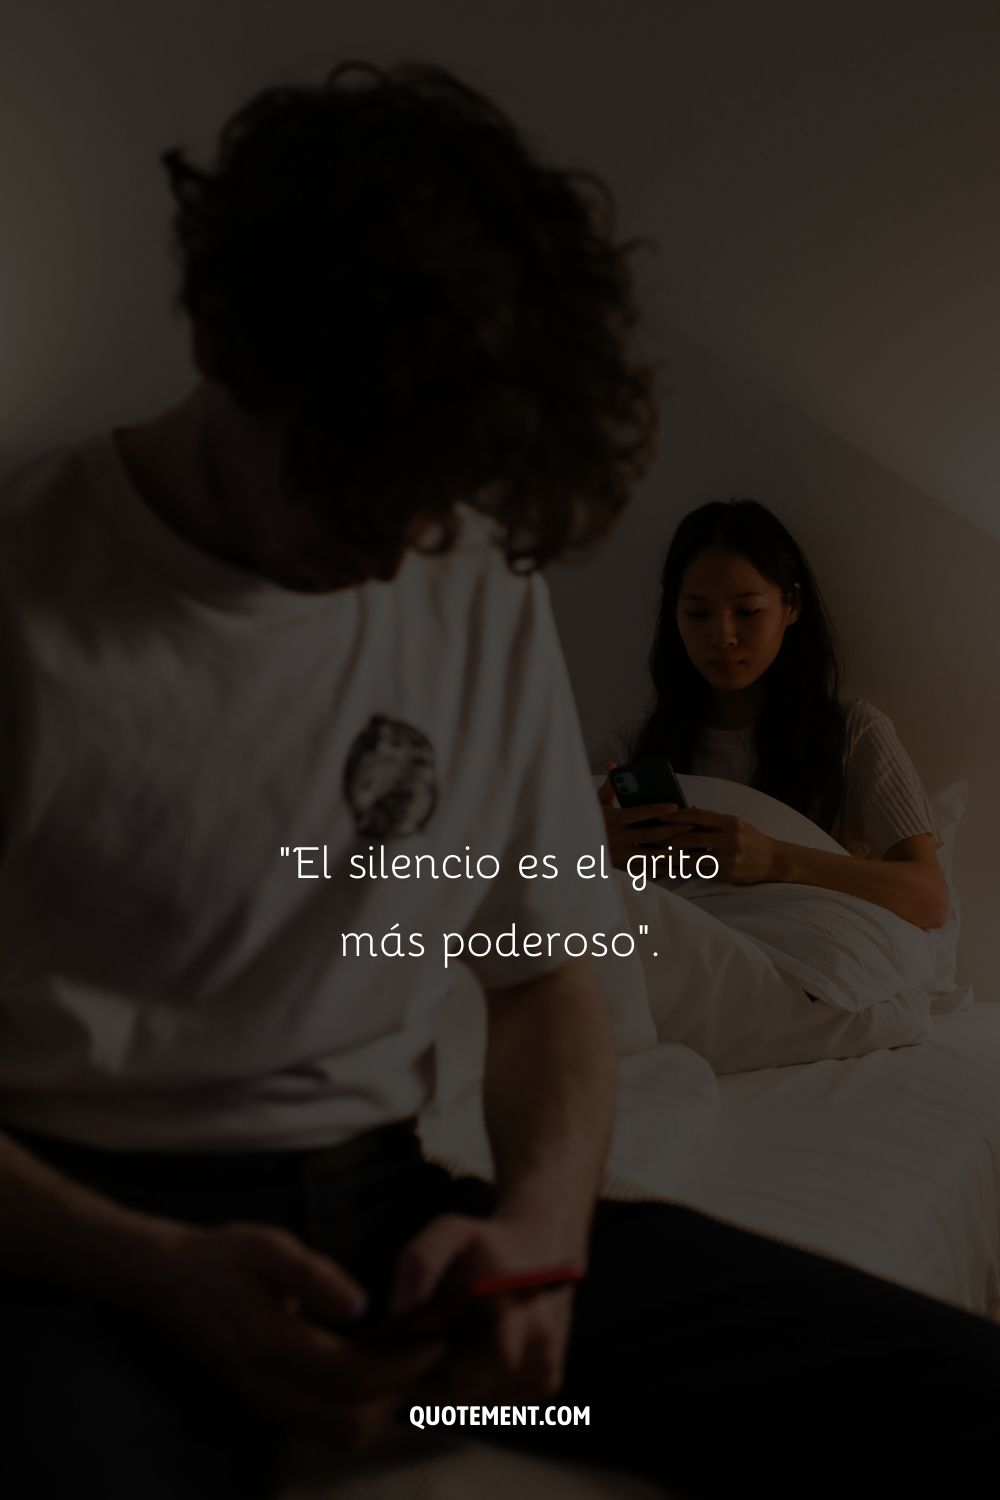 "El silencio es el grito más poderoso".